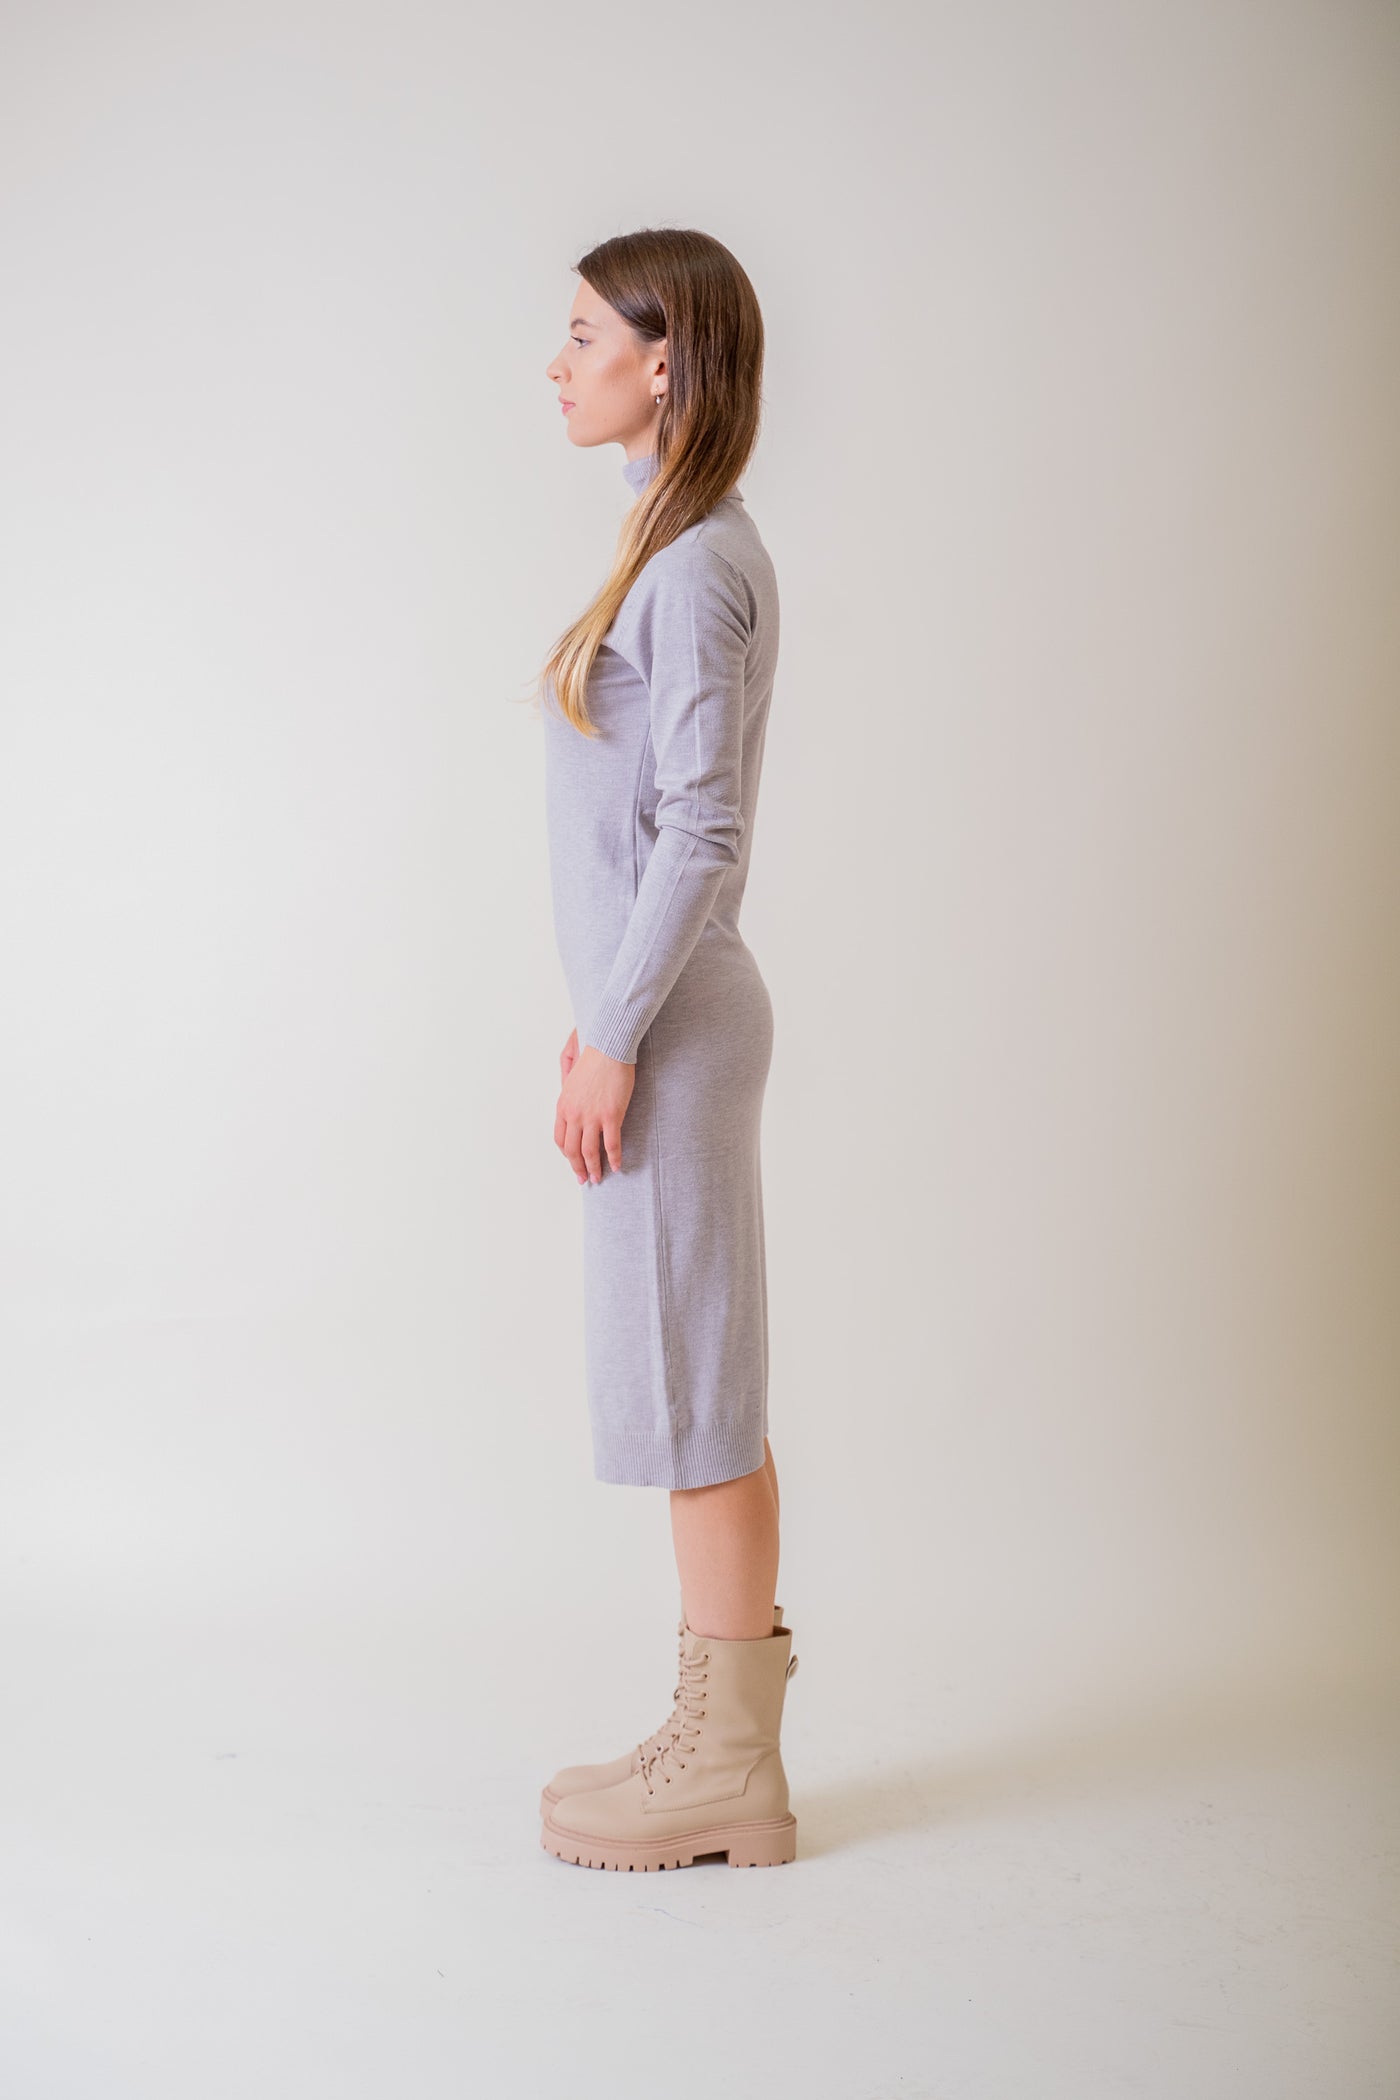 Sivé úpletové šaty - Šaty